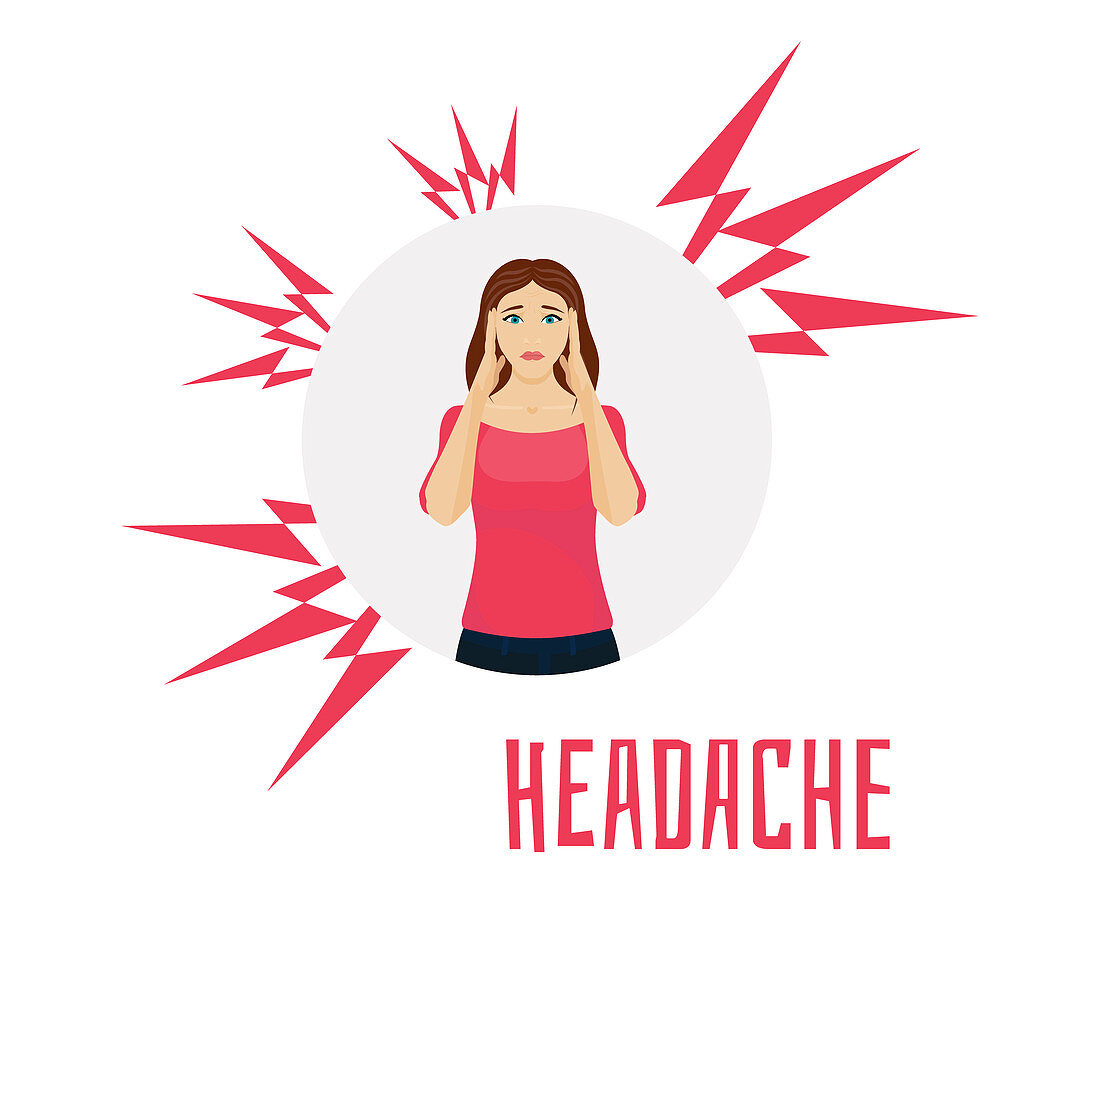 Headache, conceptual illustration